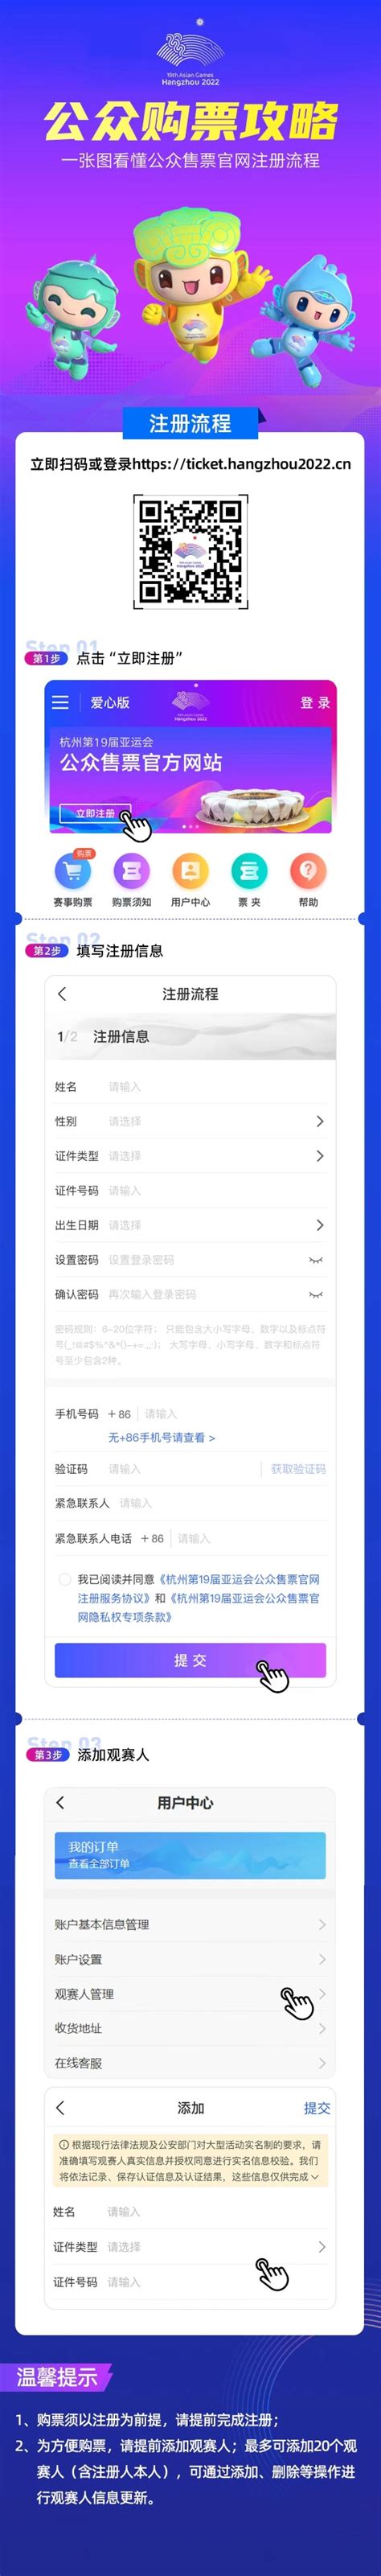 杭州亚运会公众售票官方网站上线 体育比赛门票销售启动-杭州新闻中心-杭州网